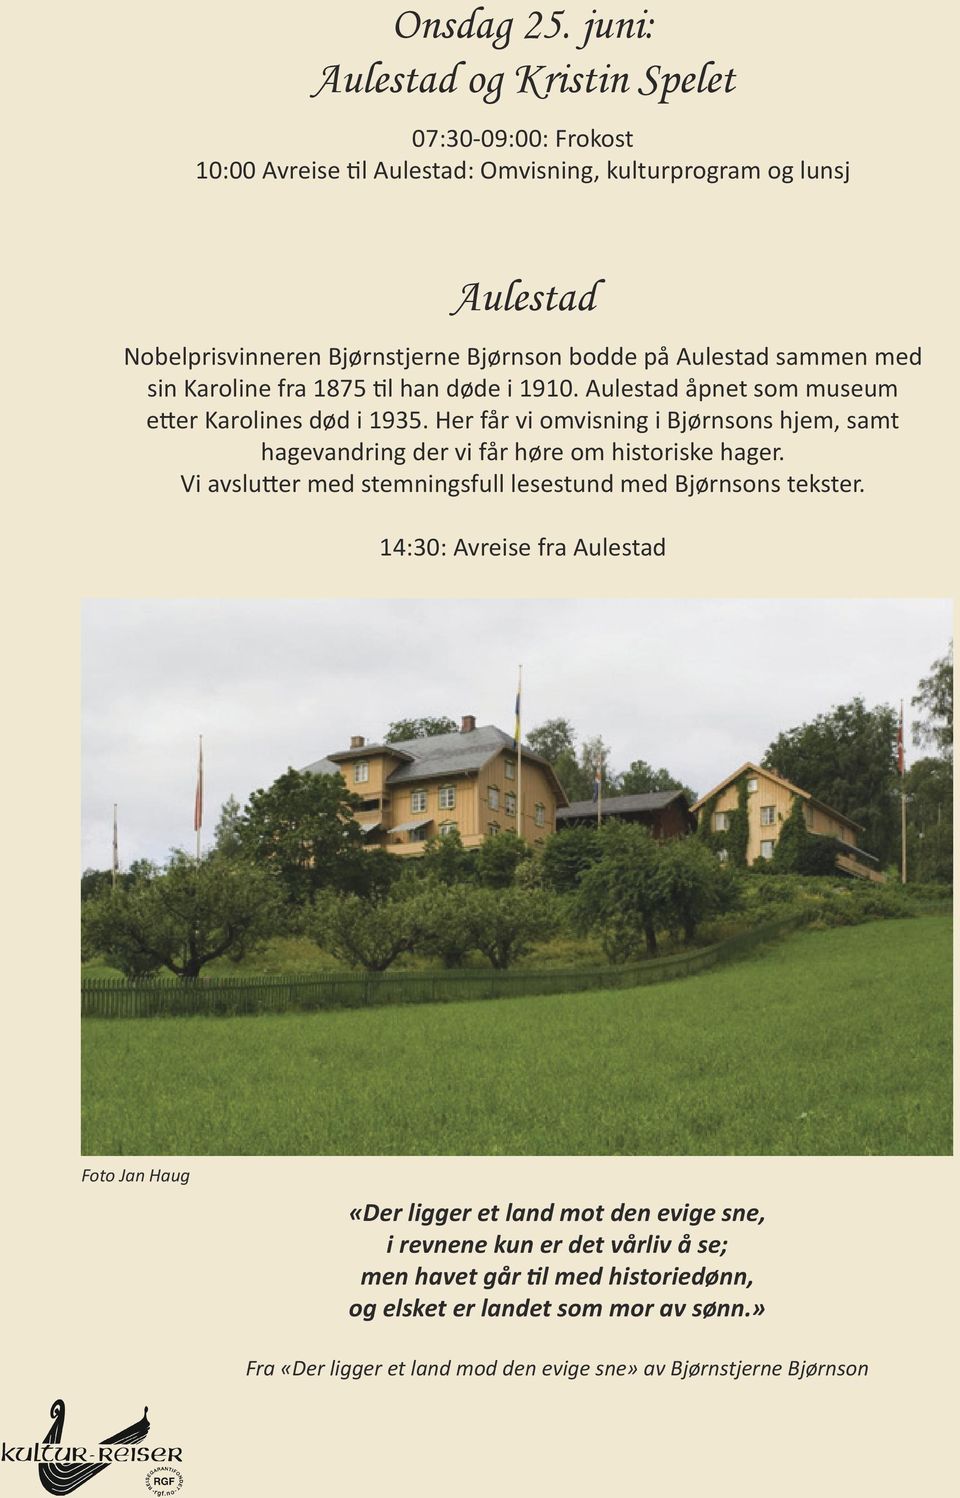 Aulestad sammen med sin Karoline fra 1875 til han døde i 1910. Aulestad åpnet som museum etter Karolines død i 1935.